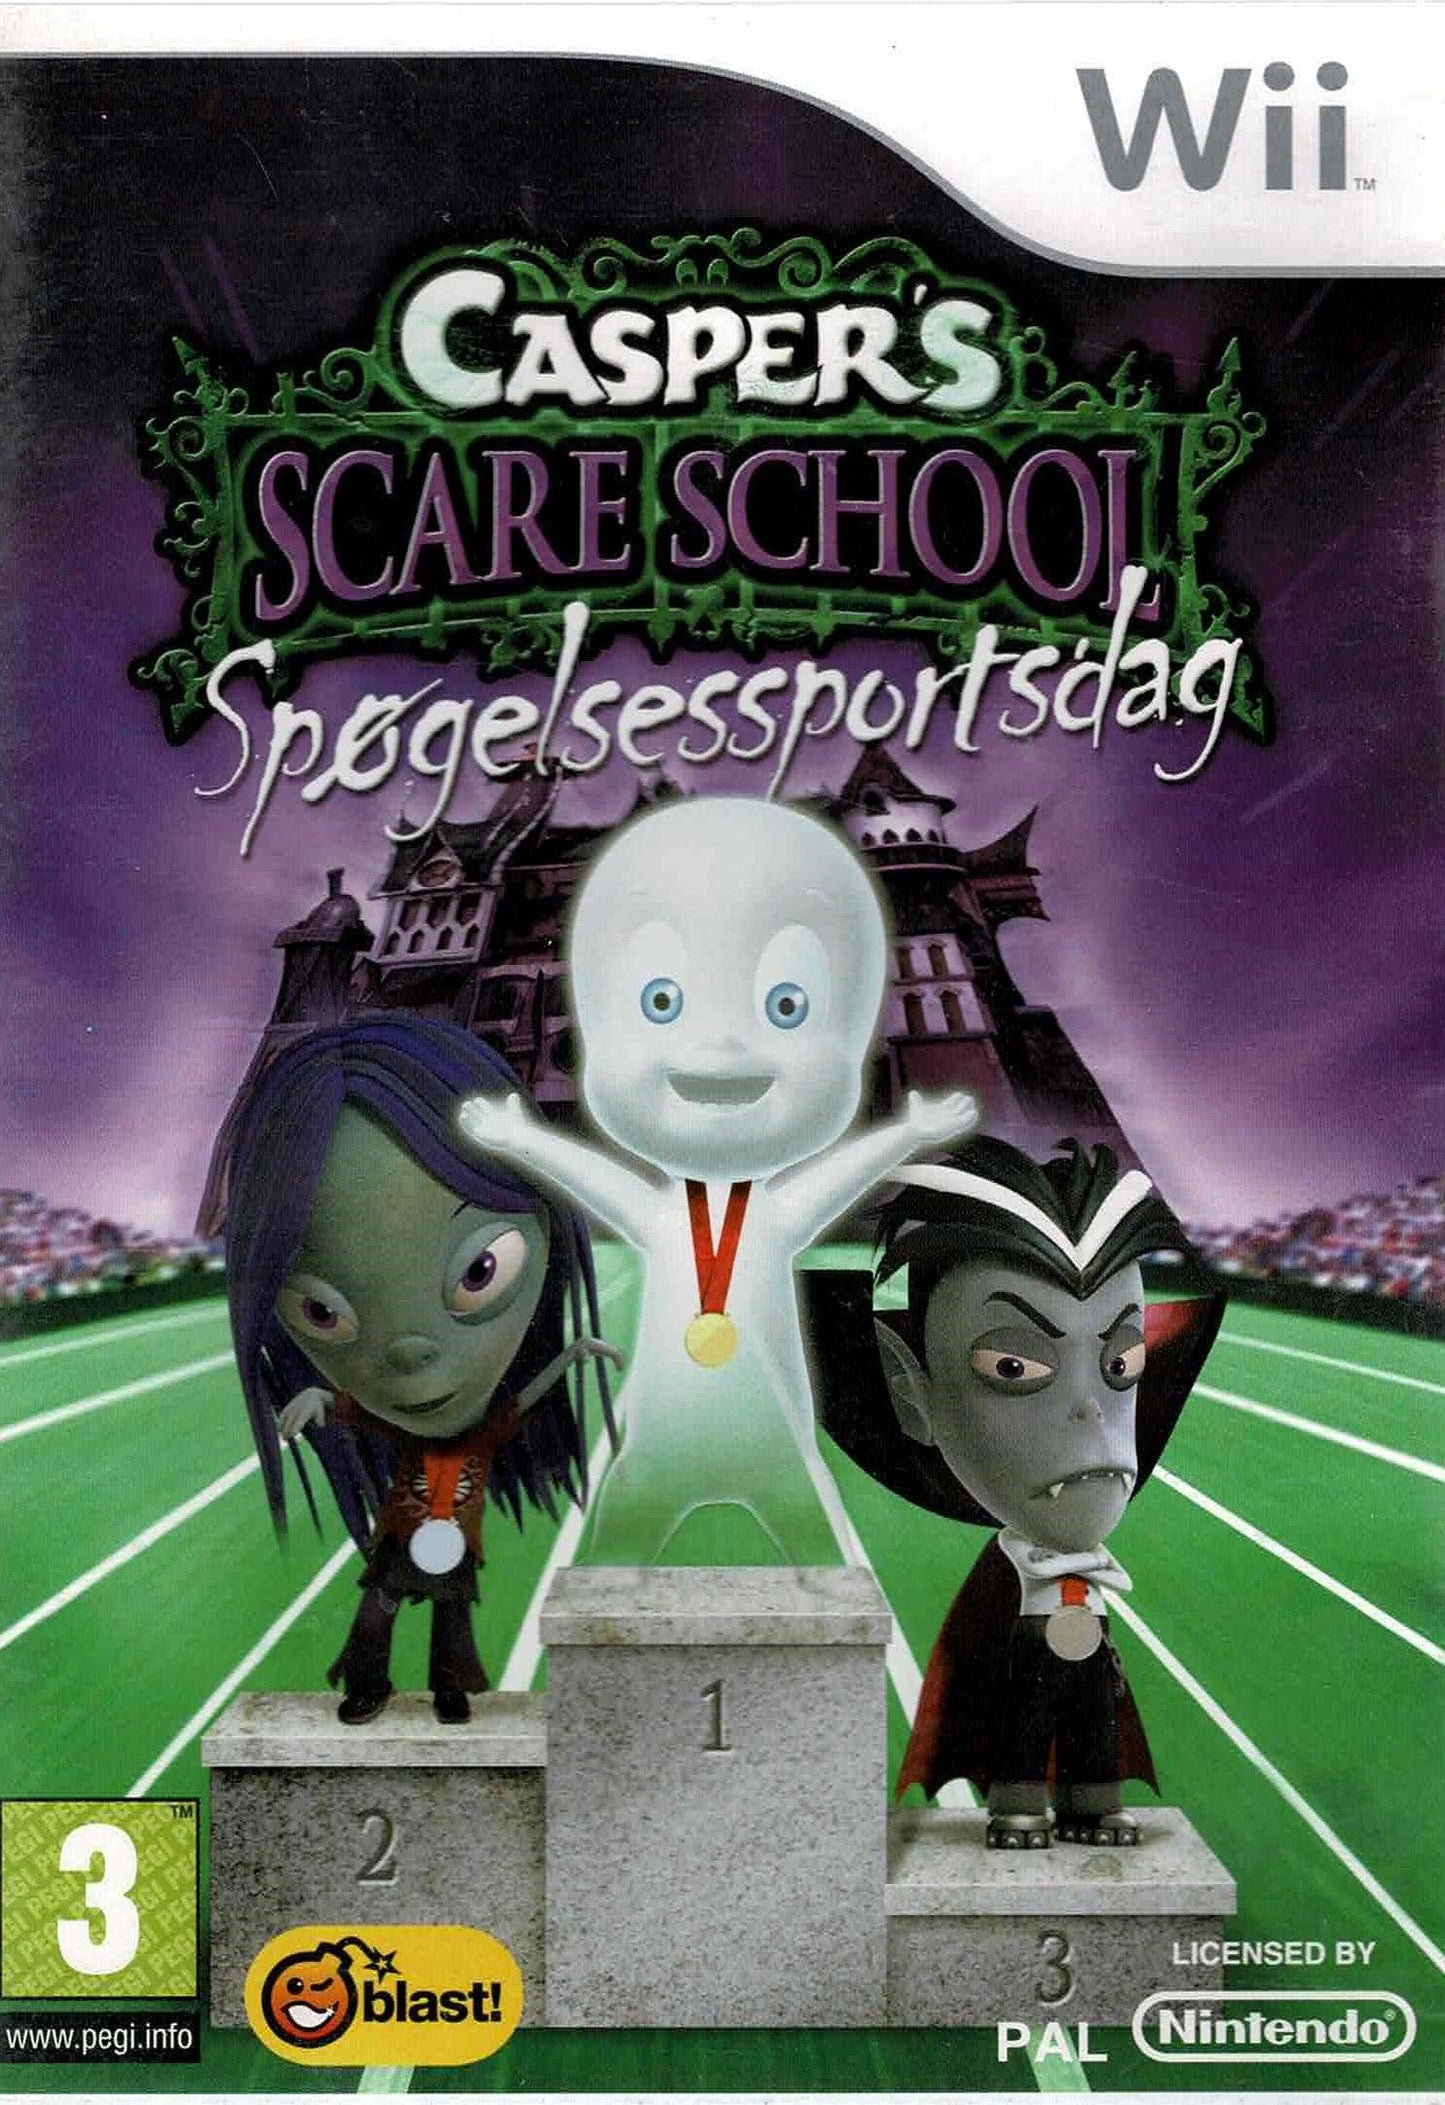 Casper's Scare School Spøgelsessportsdag - ZZGames.dk